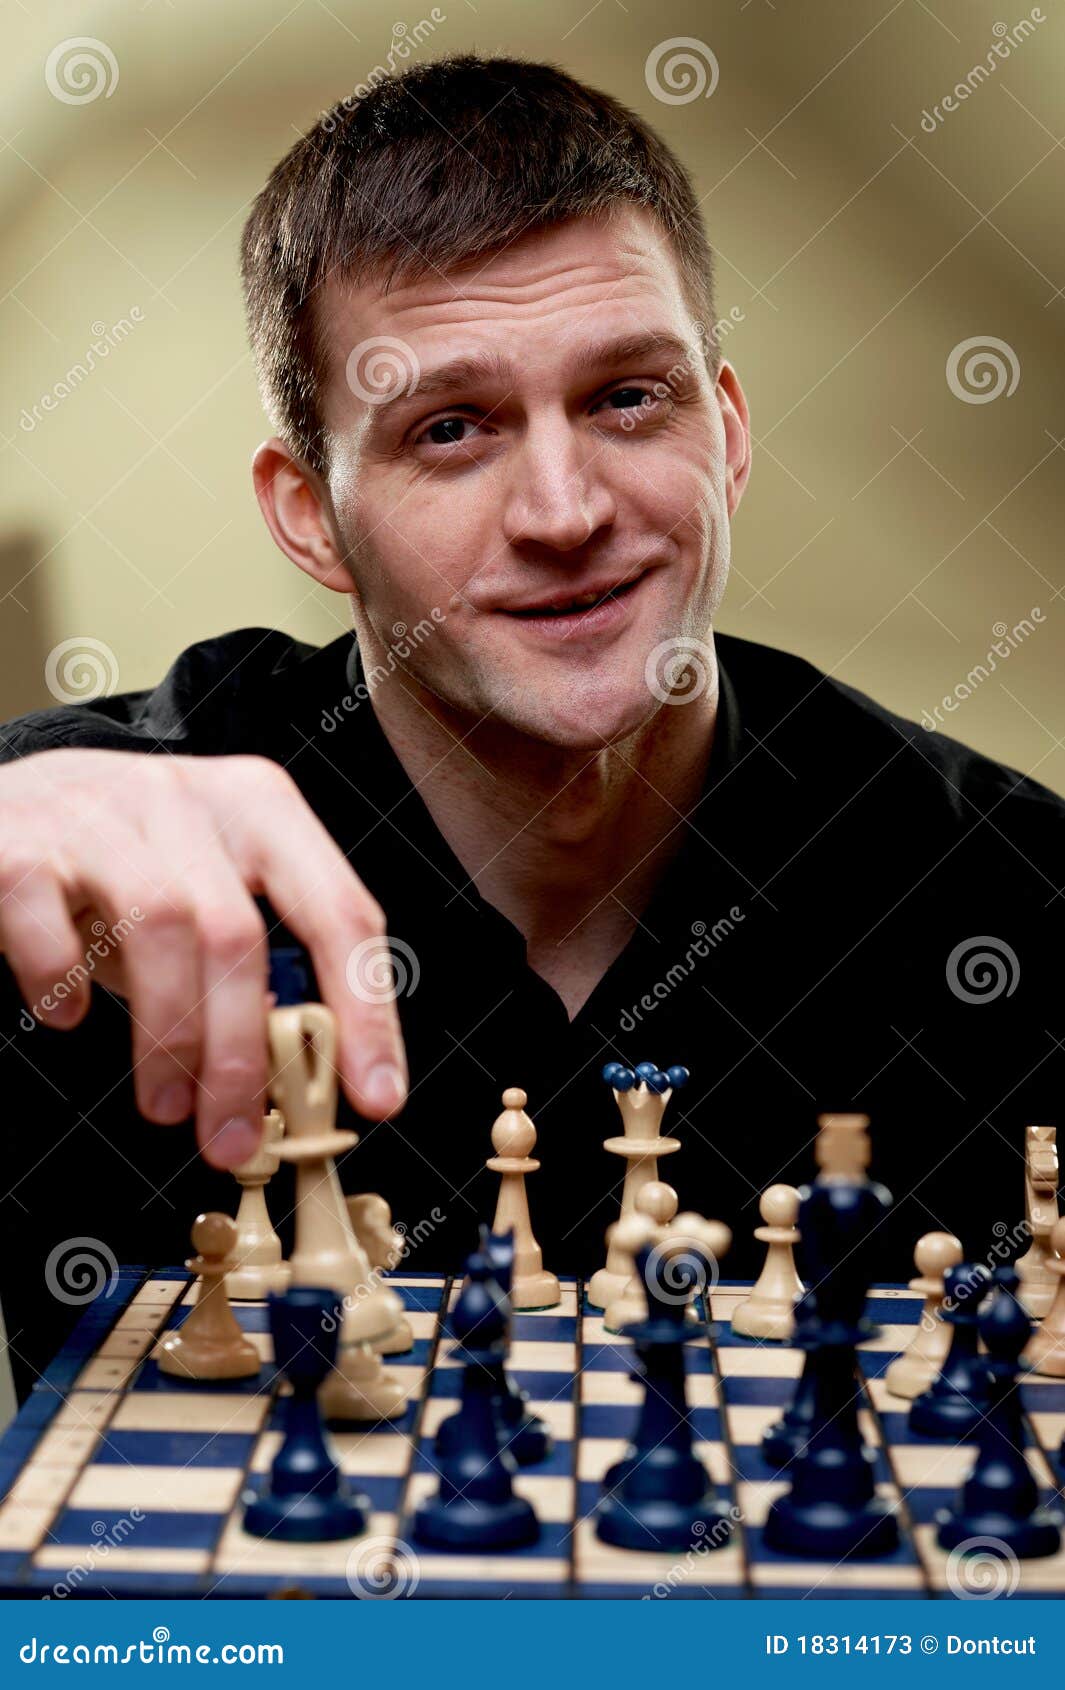 Desafiador: conheça o xadrez de três jogadores - Engenharia é